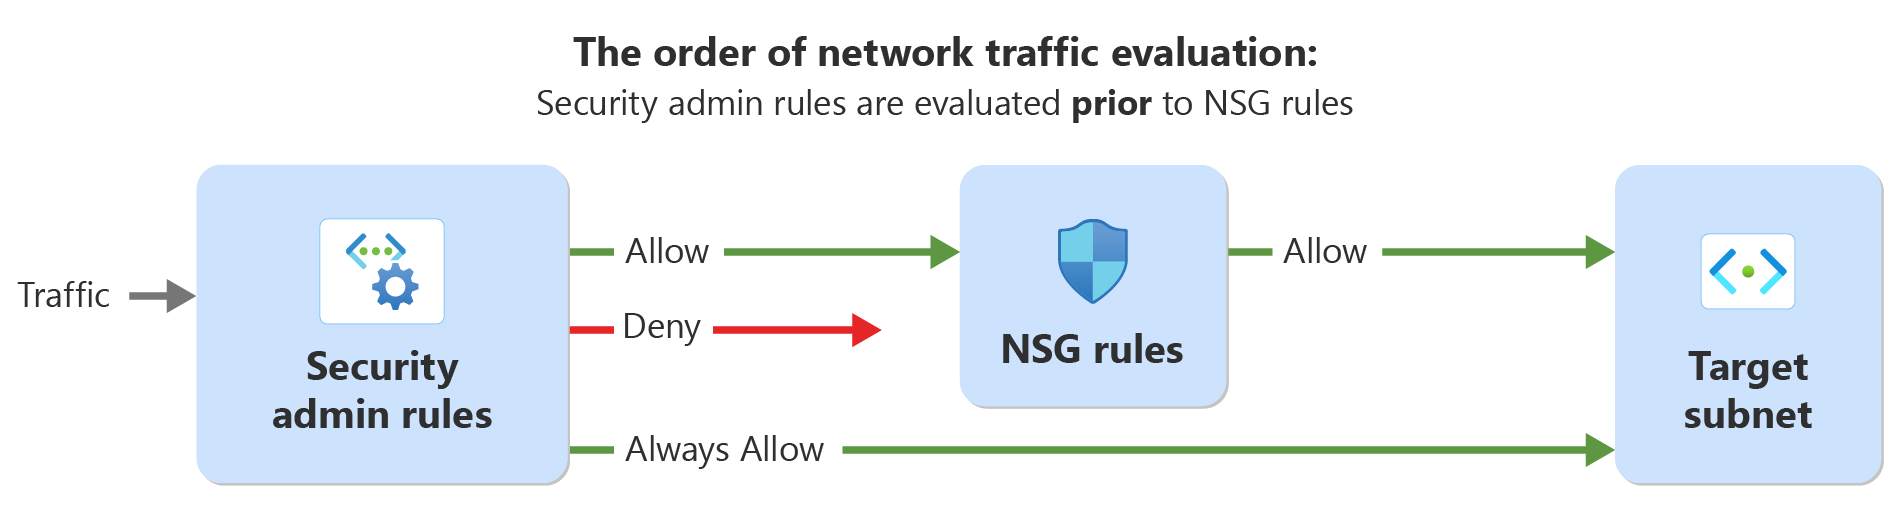 Diagram met de volgorde van de evaluatie voor netwerkverkeer met beveiligingsbeheerdersregels en netwerkbeveiligingsregels.